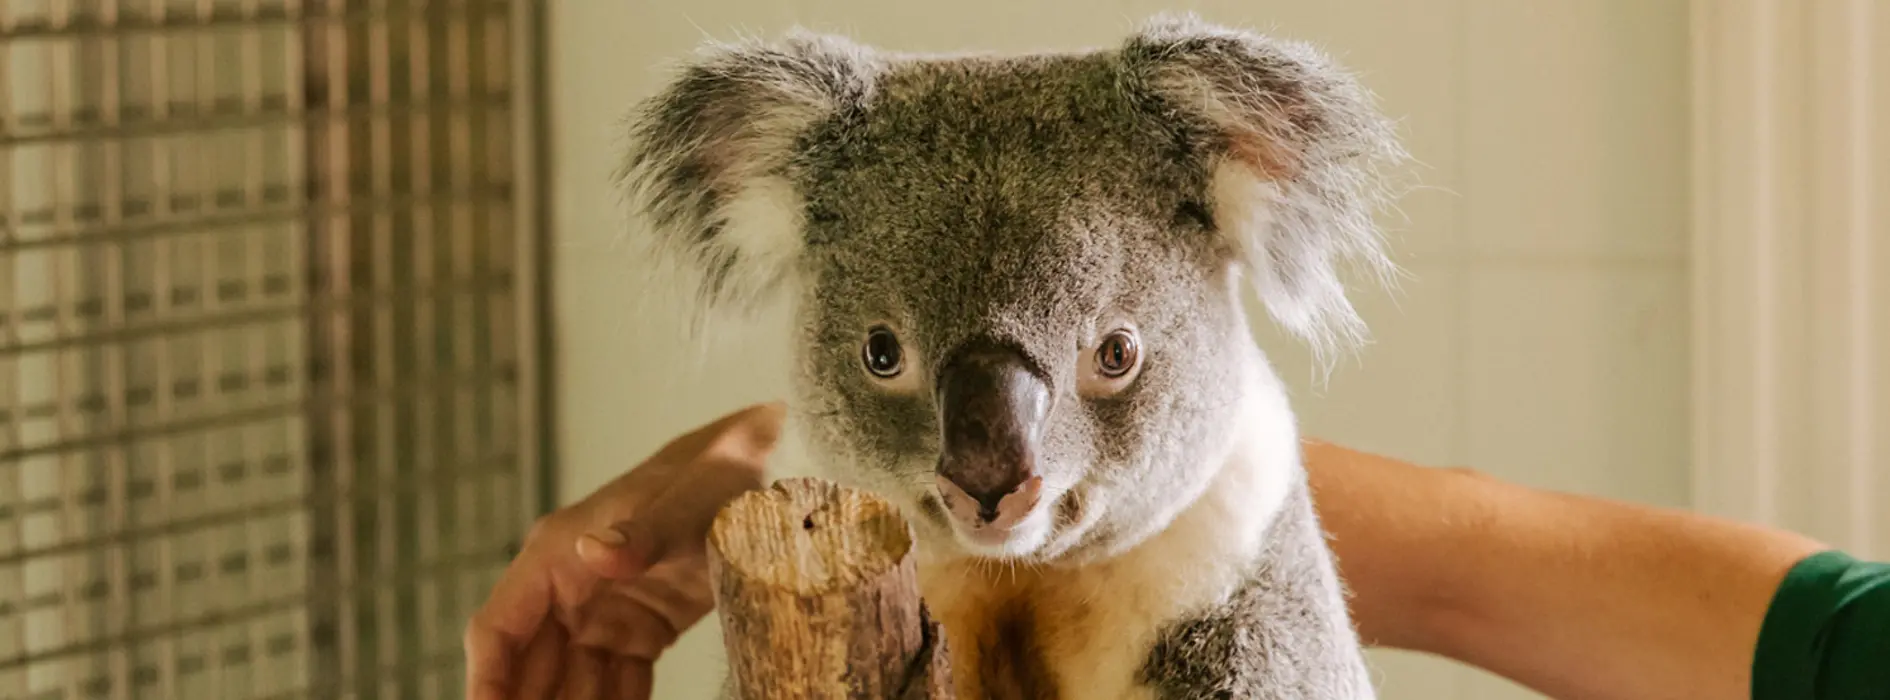 Koala Zoo Snack Cup